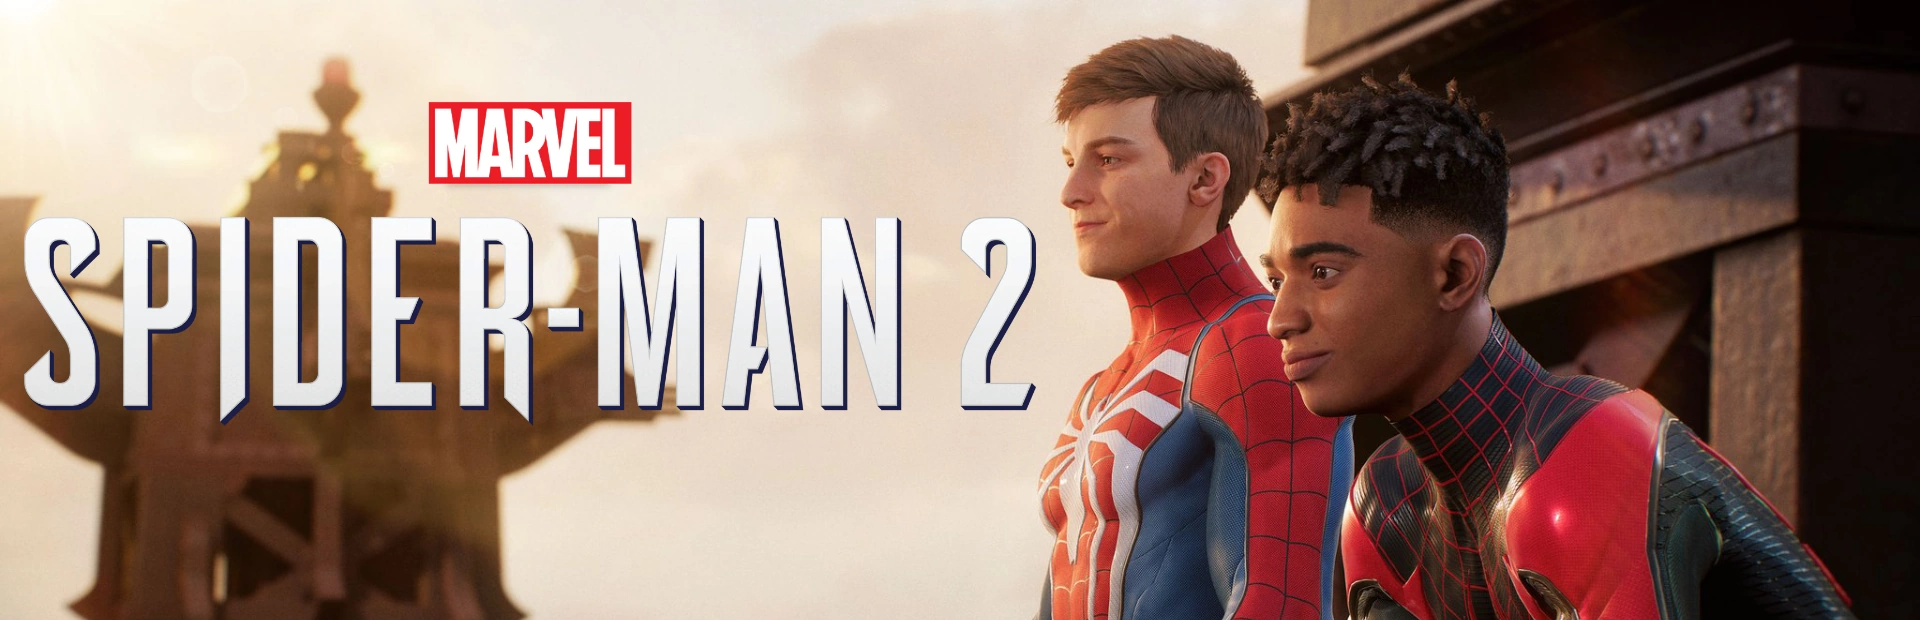 دانلود بازی Marvels Spider-Man 2 برای کامپیوتر | گیمباتو